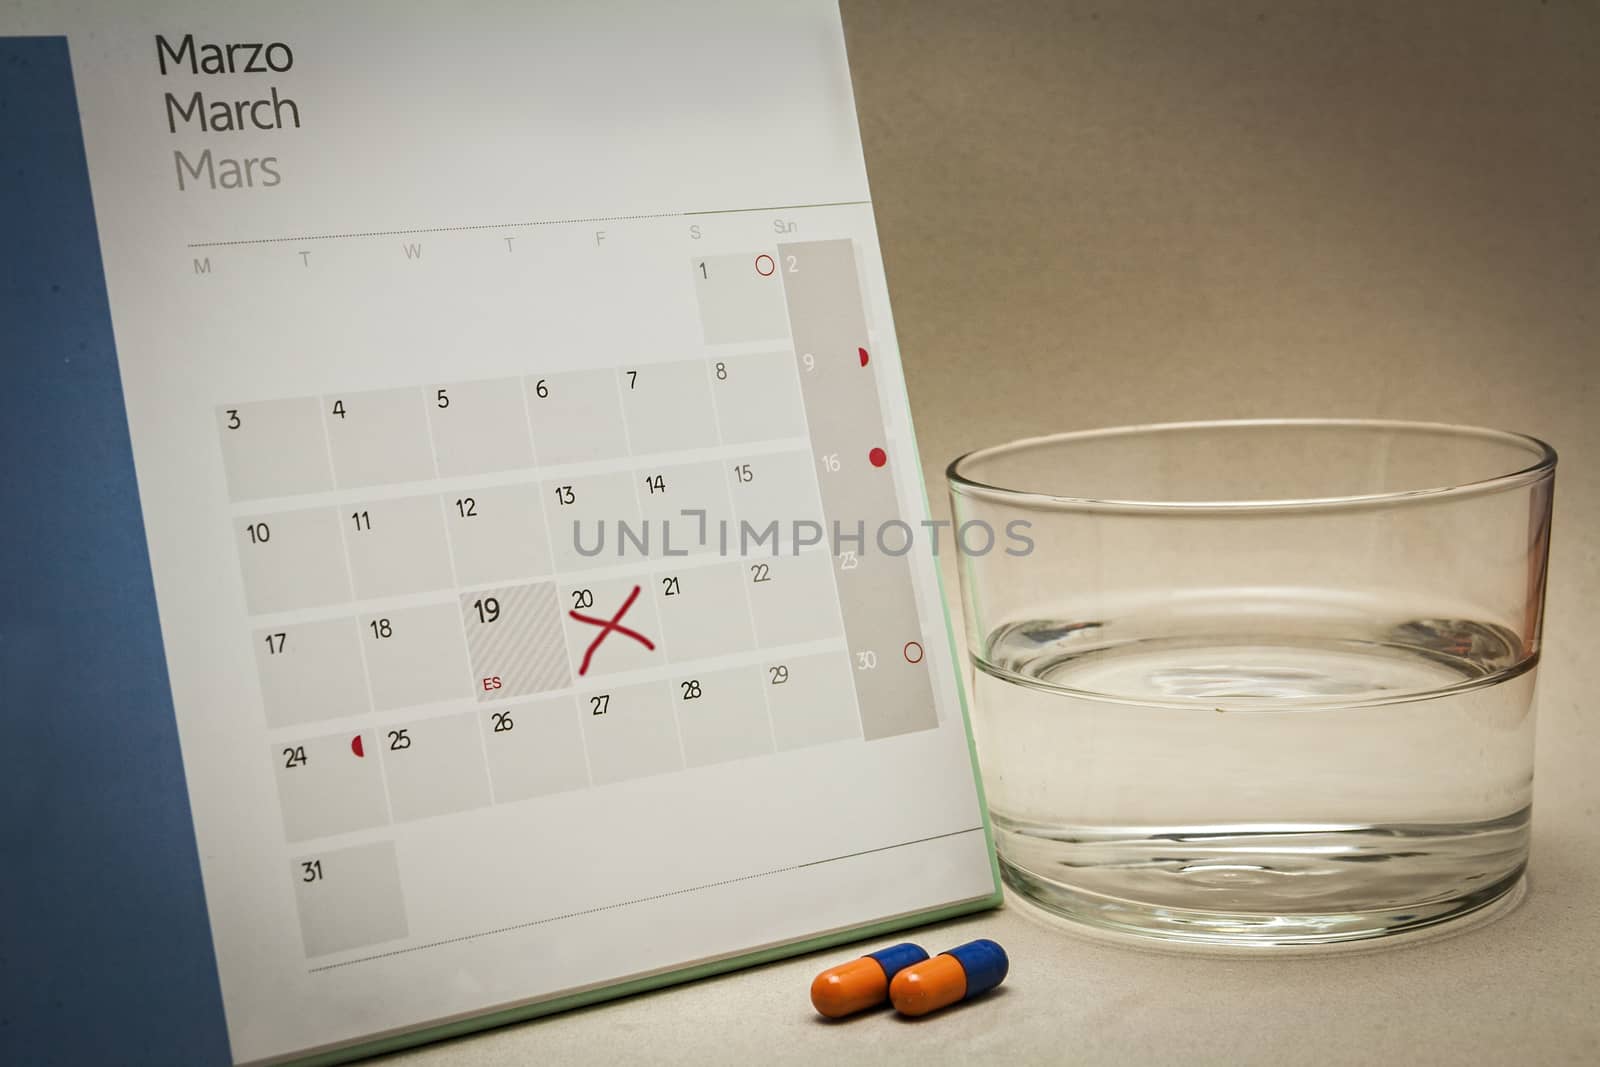 control pills on a calendar 